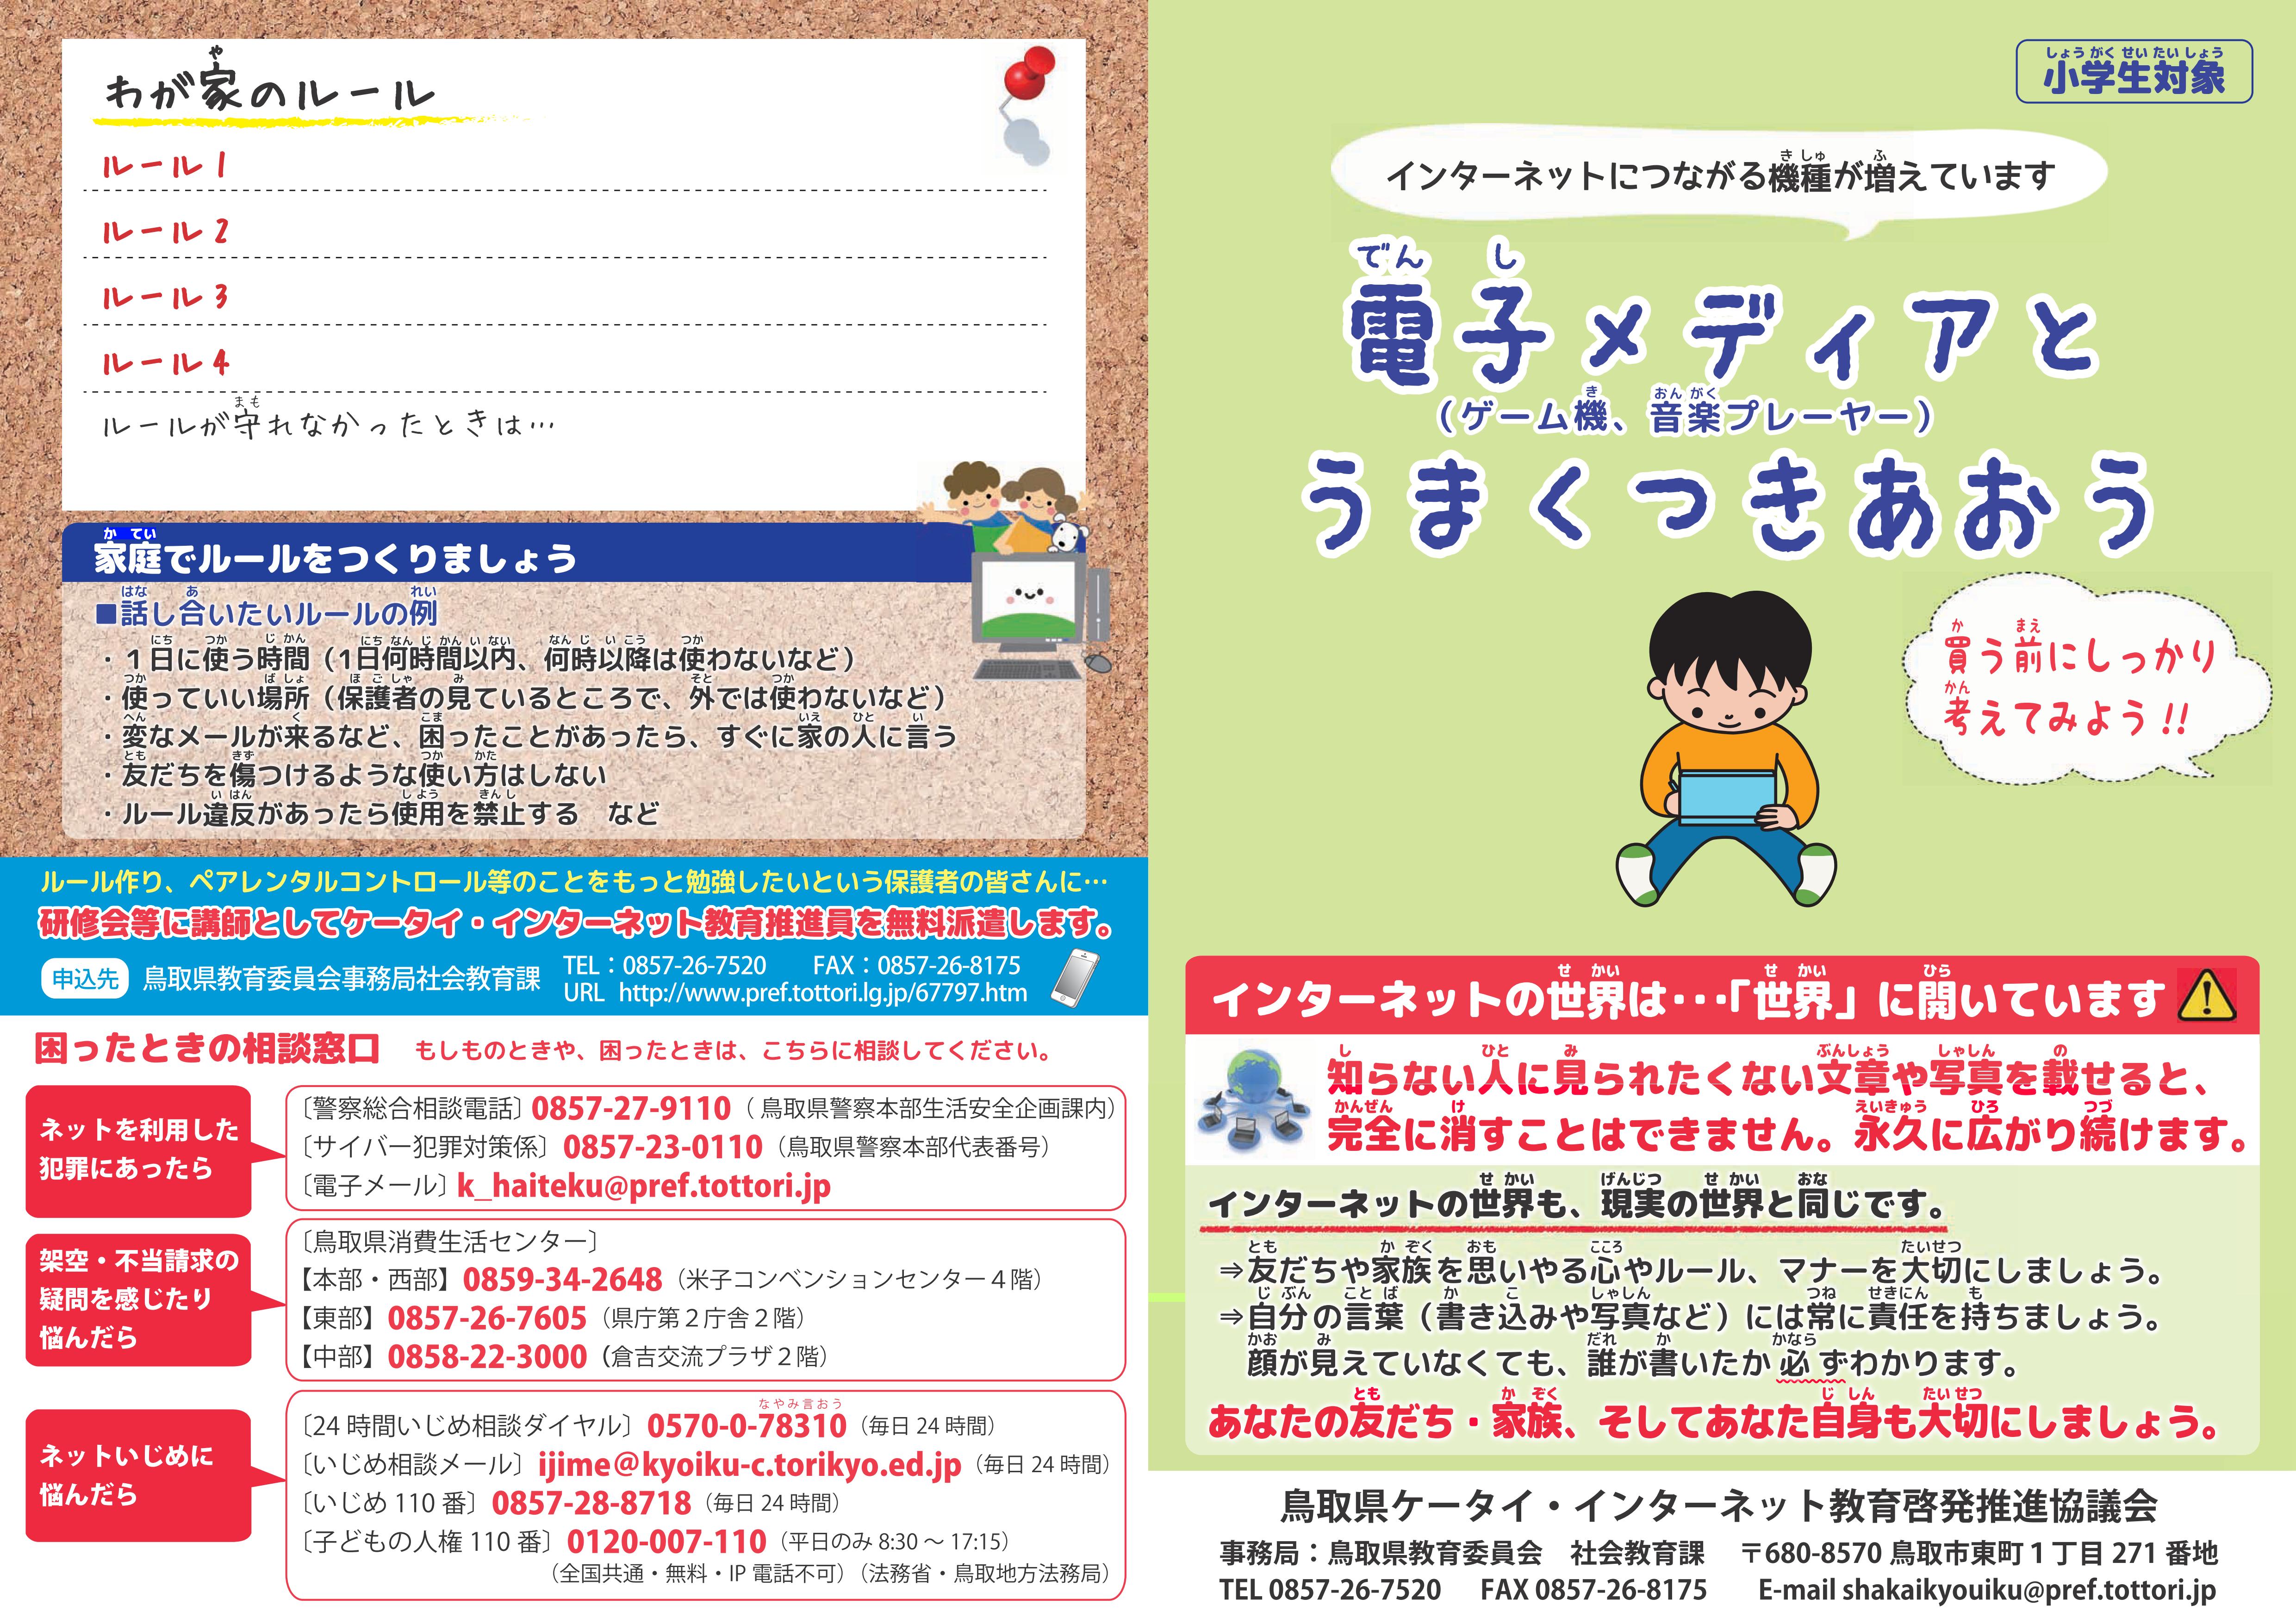 鳥取県 小中学生に携帯電話 インターネット啓発リーフレットを配布 Ict教育ニュース